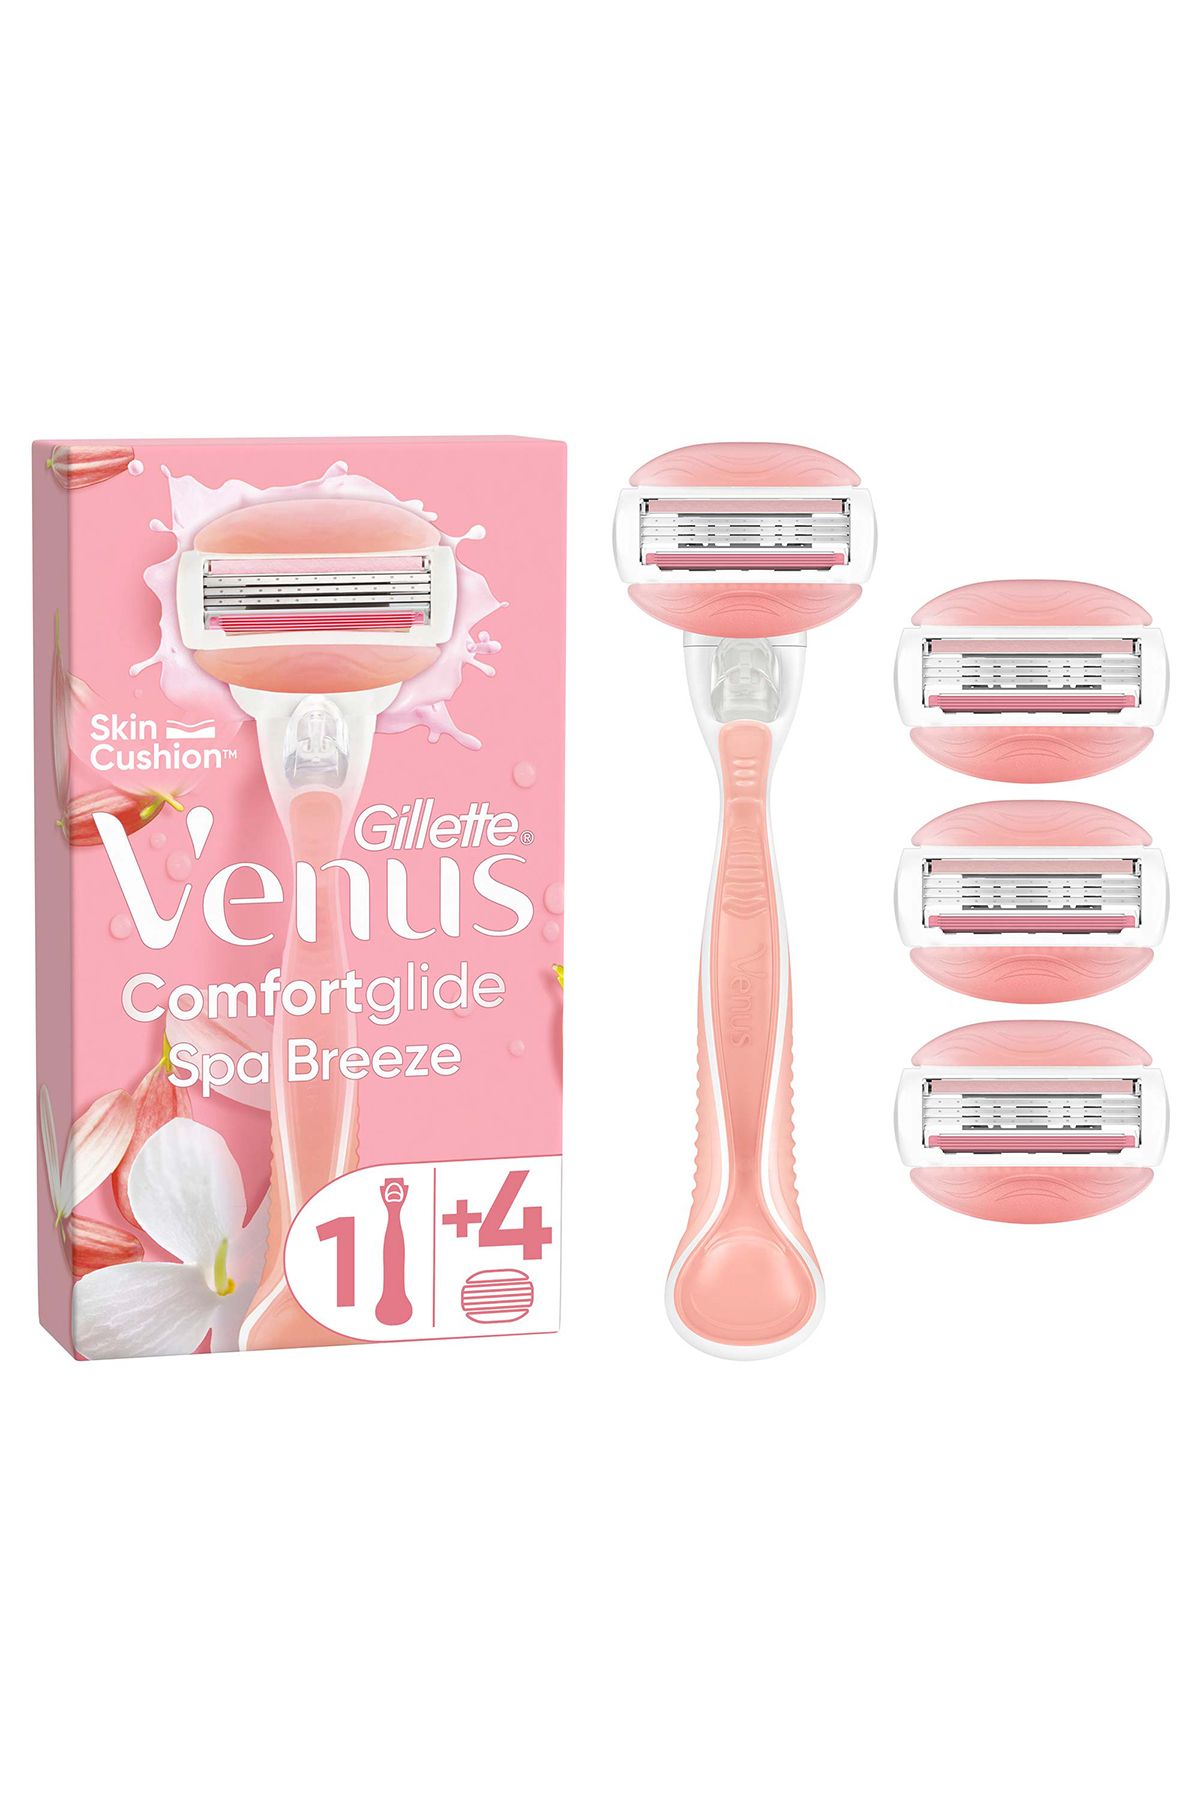 Gillette Venus Venus Comfortglide Spa Breeze Kadın Tıraş Makinesi 4 Adet Yedek Tıraş Bıçağı